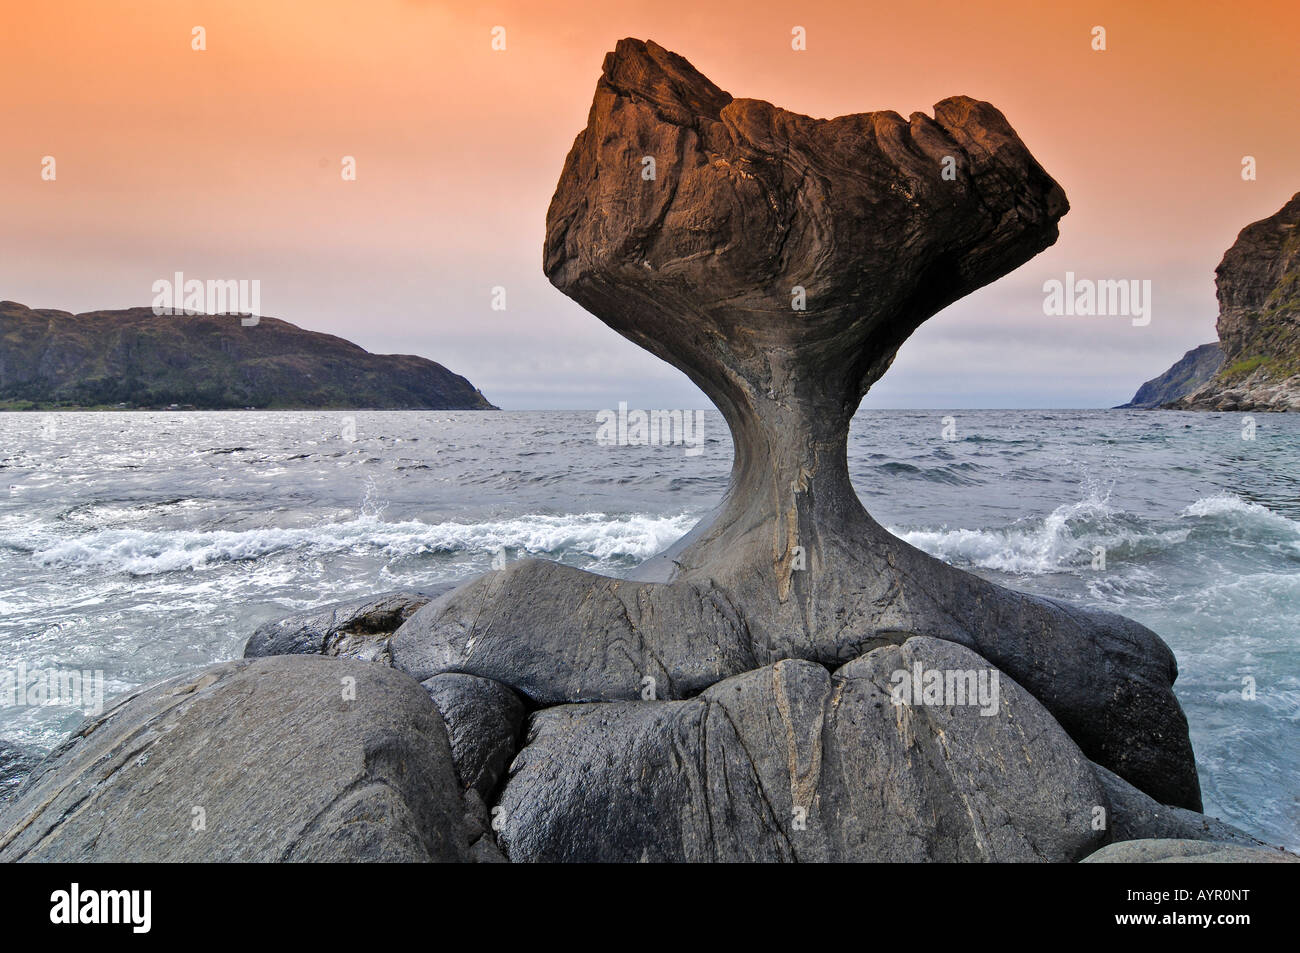 Kannesteinen rock formation, le long de la côte rocheuse près de Maloy, Vagsoy, Sogn og Fjordane, Norvège Banque D'Images